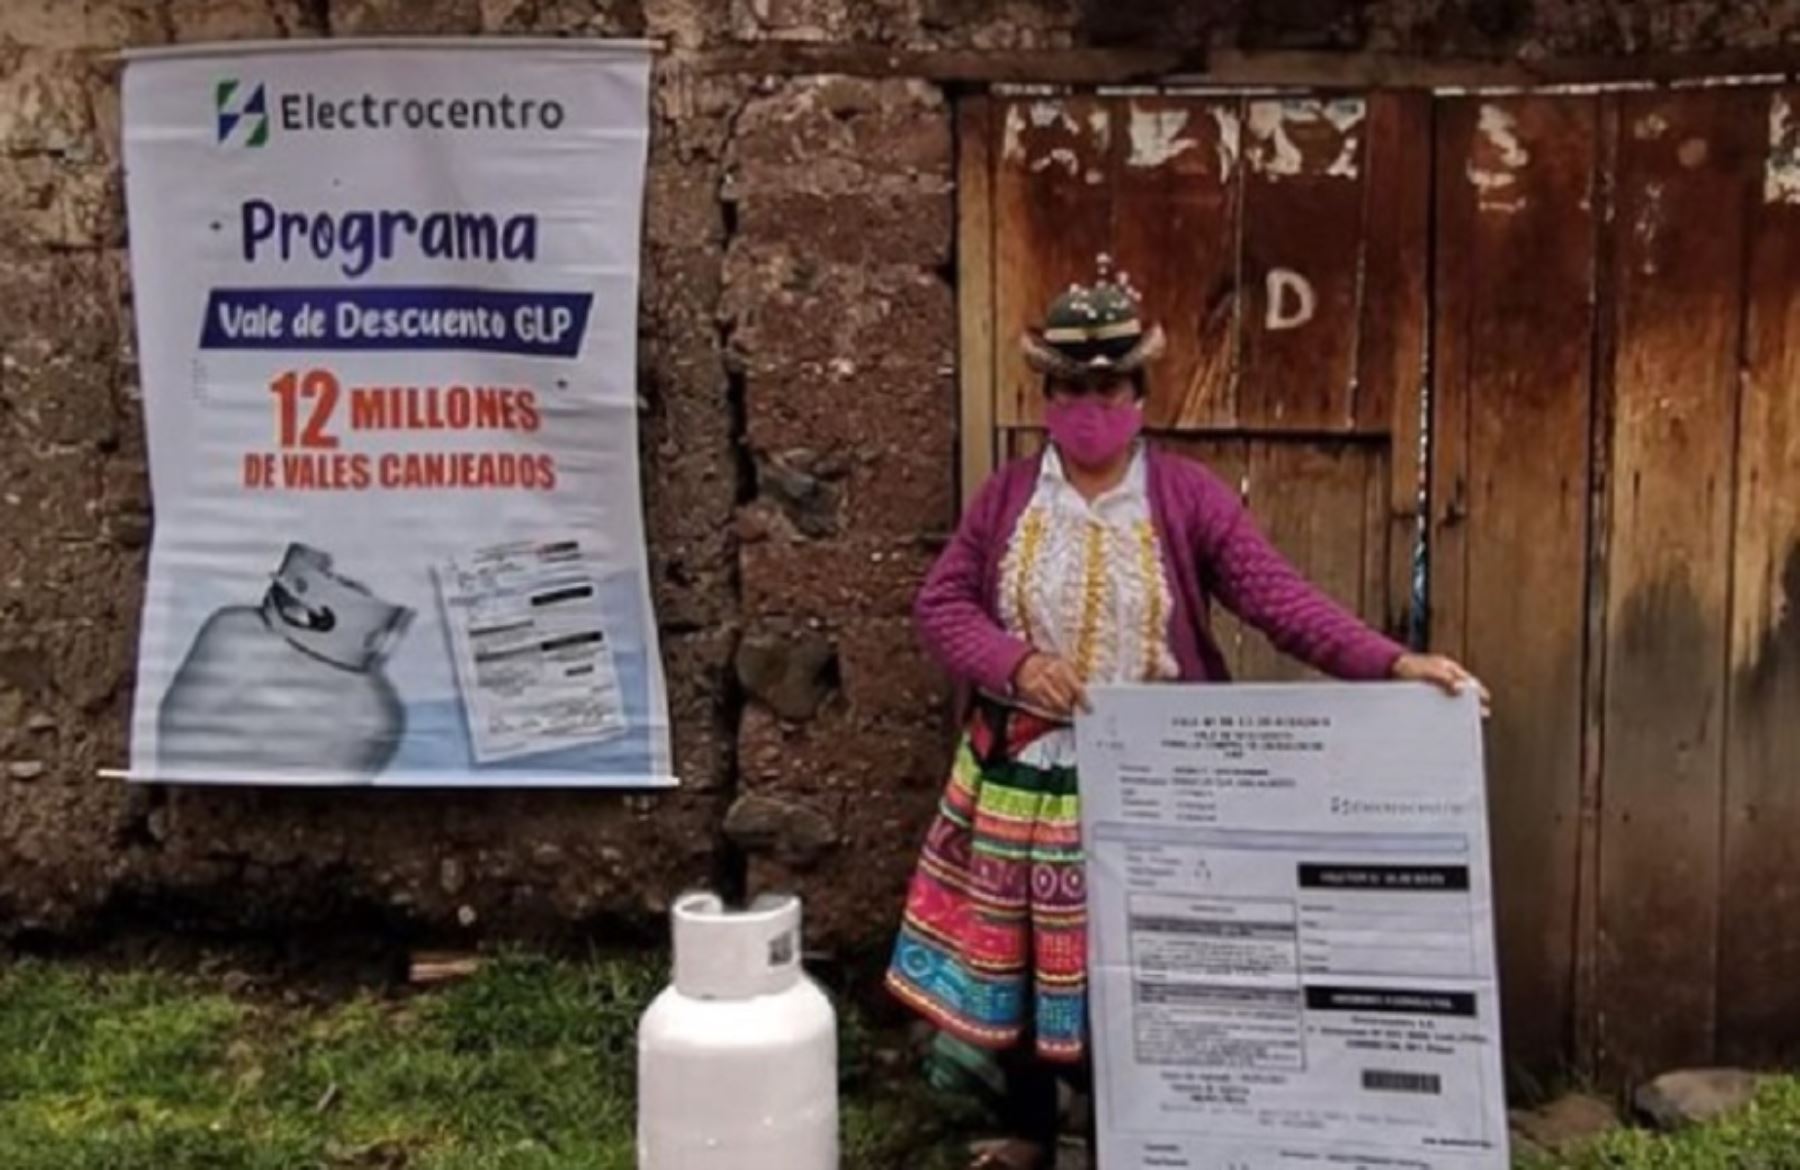 El Ministerio de Energía y Minas (Minem) informó que se ha realizado el canje número 12 millones del Vale de Descuento GLP, distribuido por la empresa Electrocentro, poniendo a las regiones de la sierra central del Perú entre las más beneficiadas de este programa social que permite acceder a una rebaja de 16 soles en la compra de un balón de gas casero. Foto: Minem